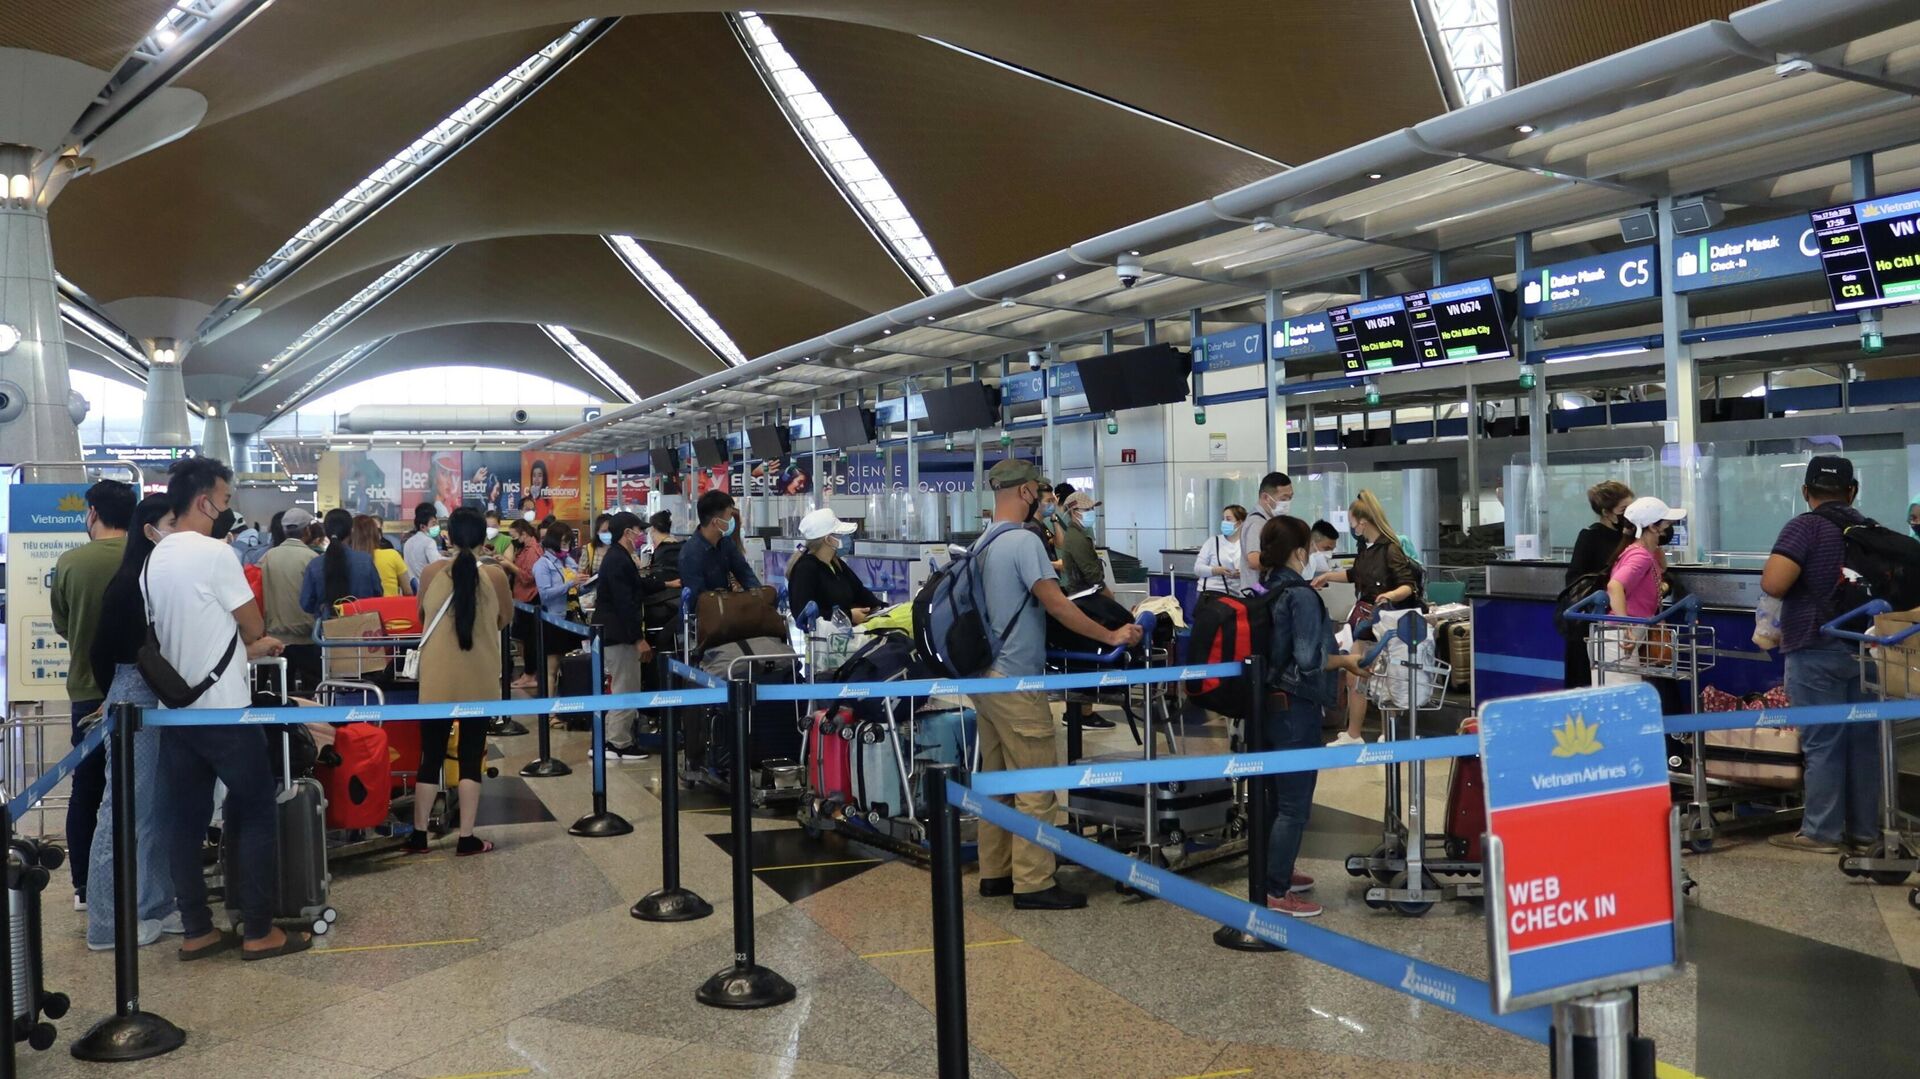 Hành khách làm thủ tục ngày 17/2/2022 tại sân bay quốc tế Kuala Lumpur, Malaysia để lên chuyến bay VN674. - Sputnik Việt Nam, 1920, 19.03.2022